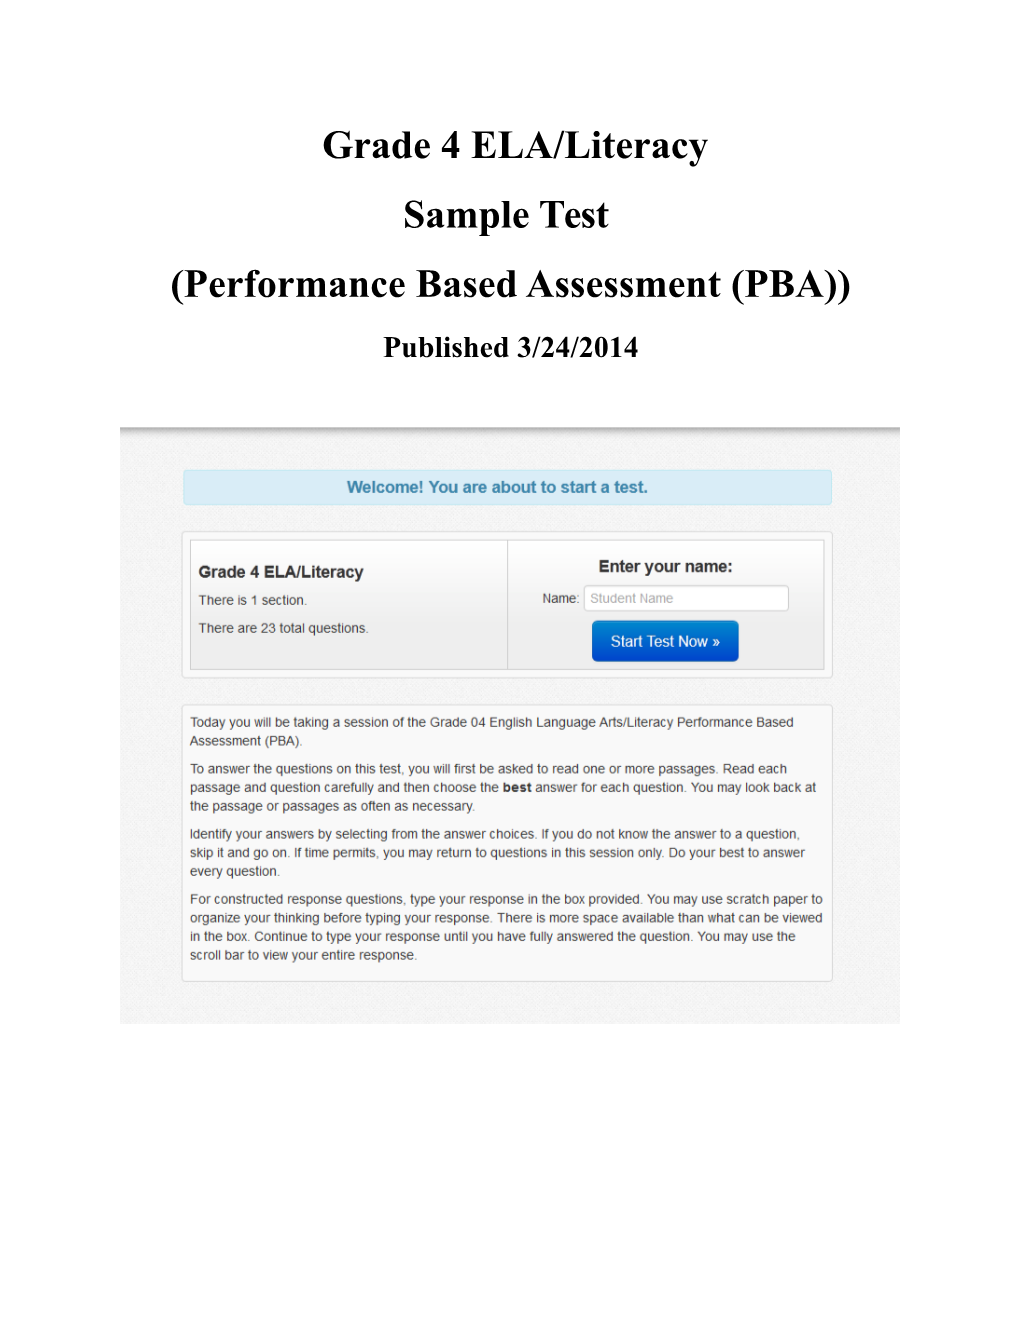 Performance Based Assessment (PBA